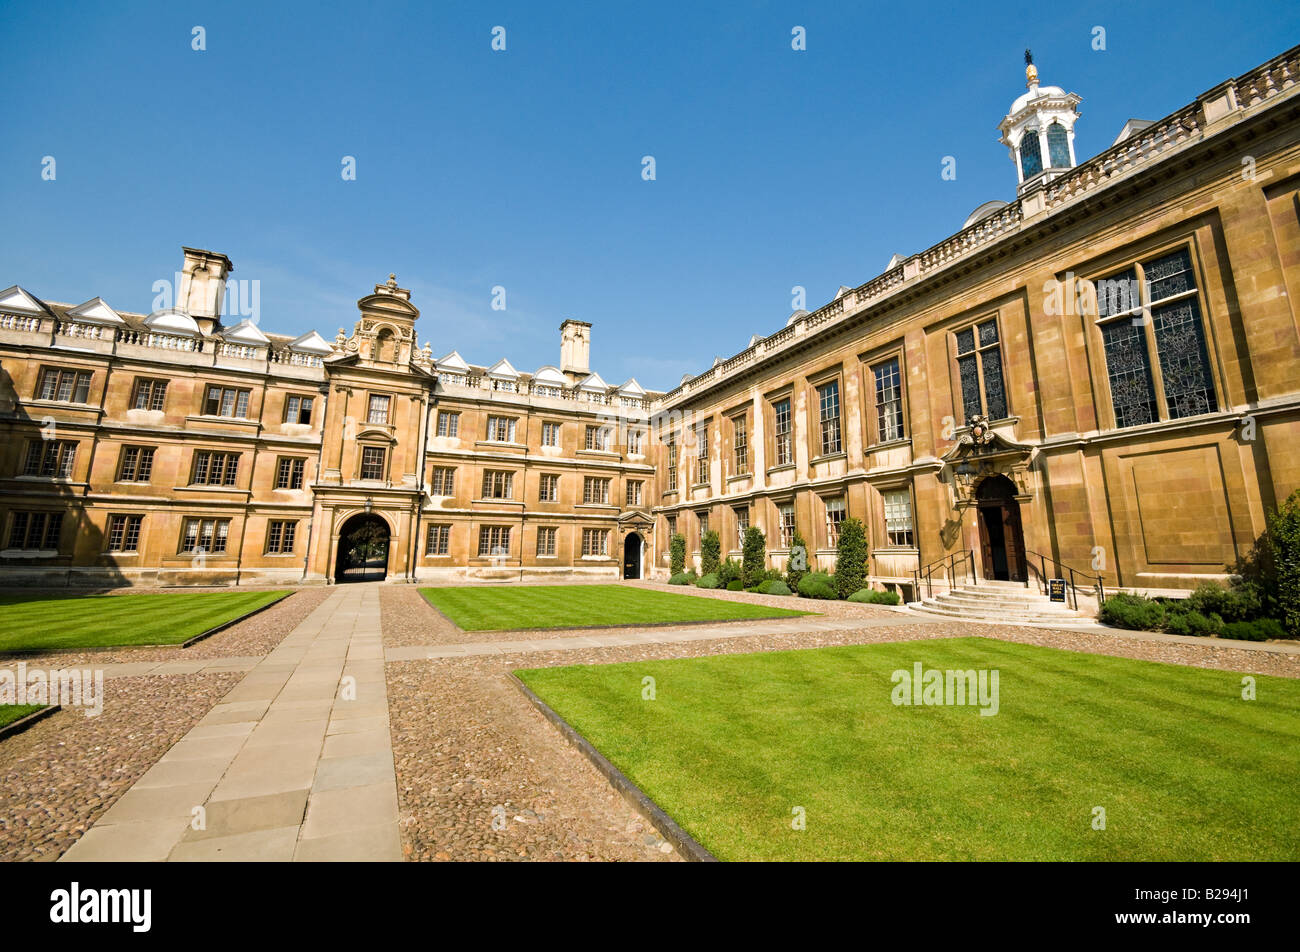 Clare college Cambridge United Kingdom Stock Photo